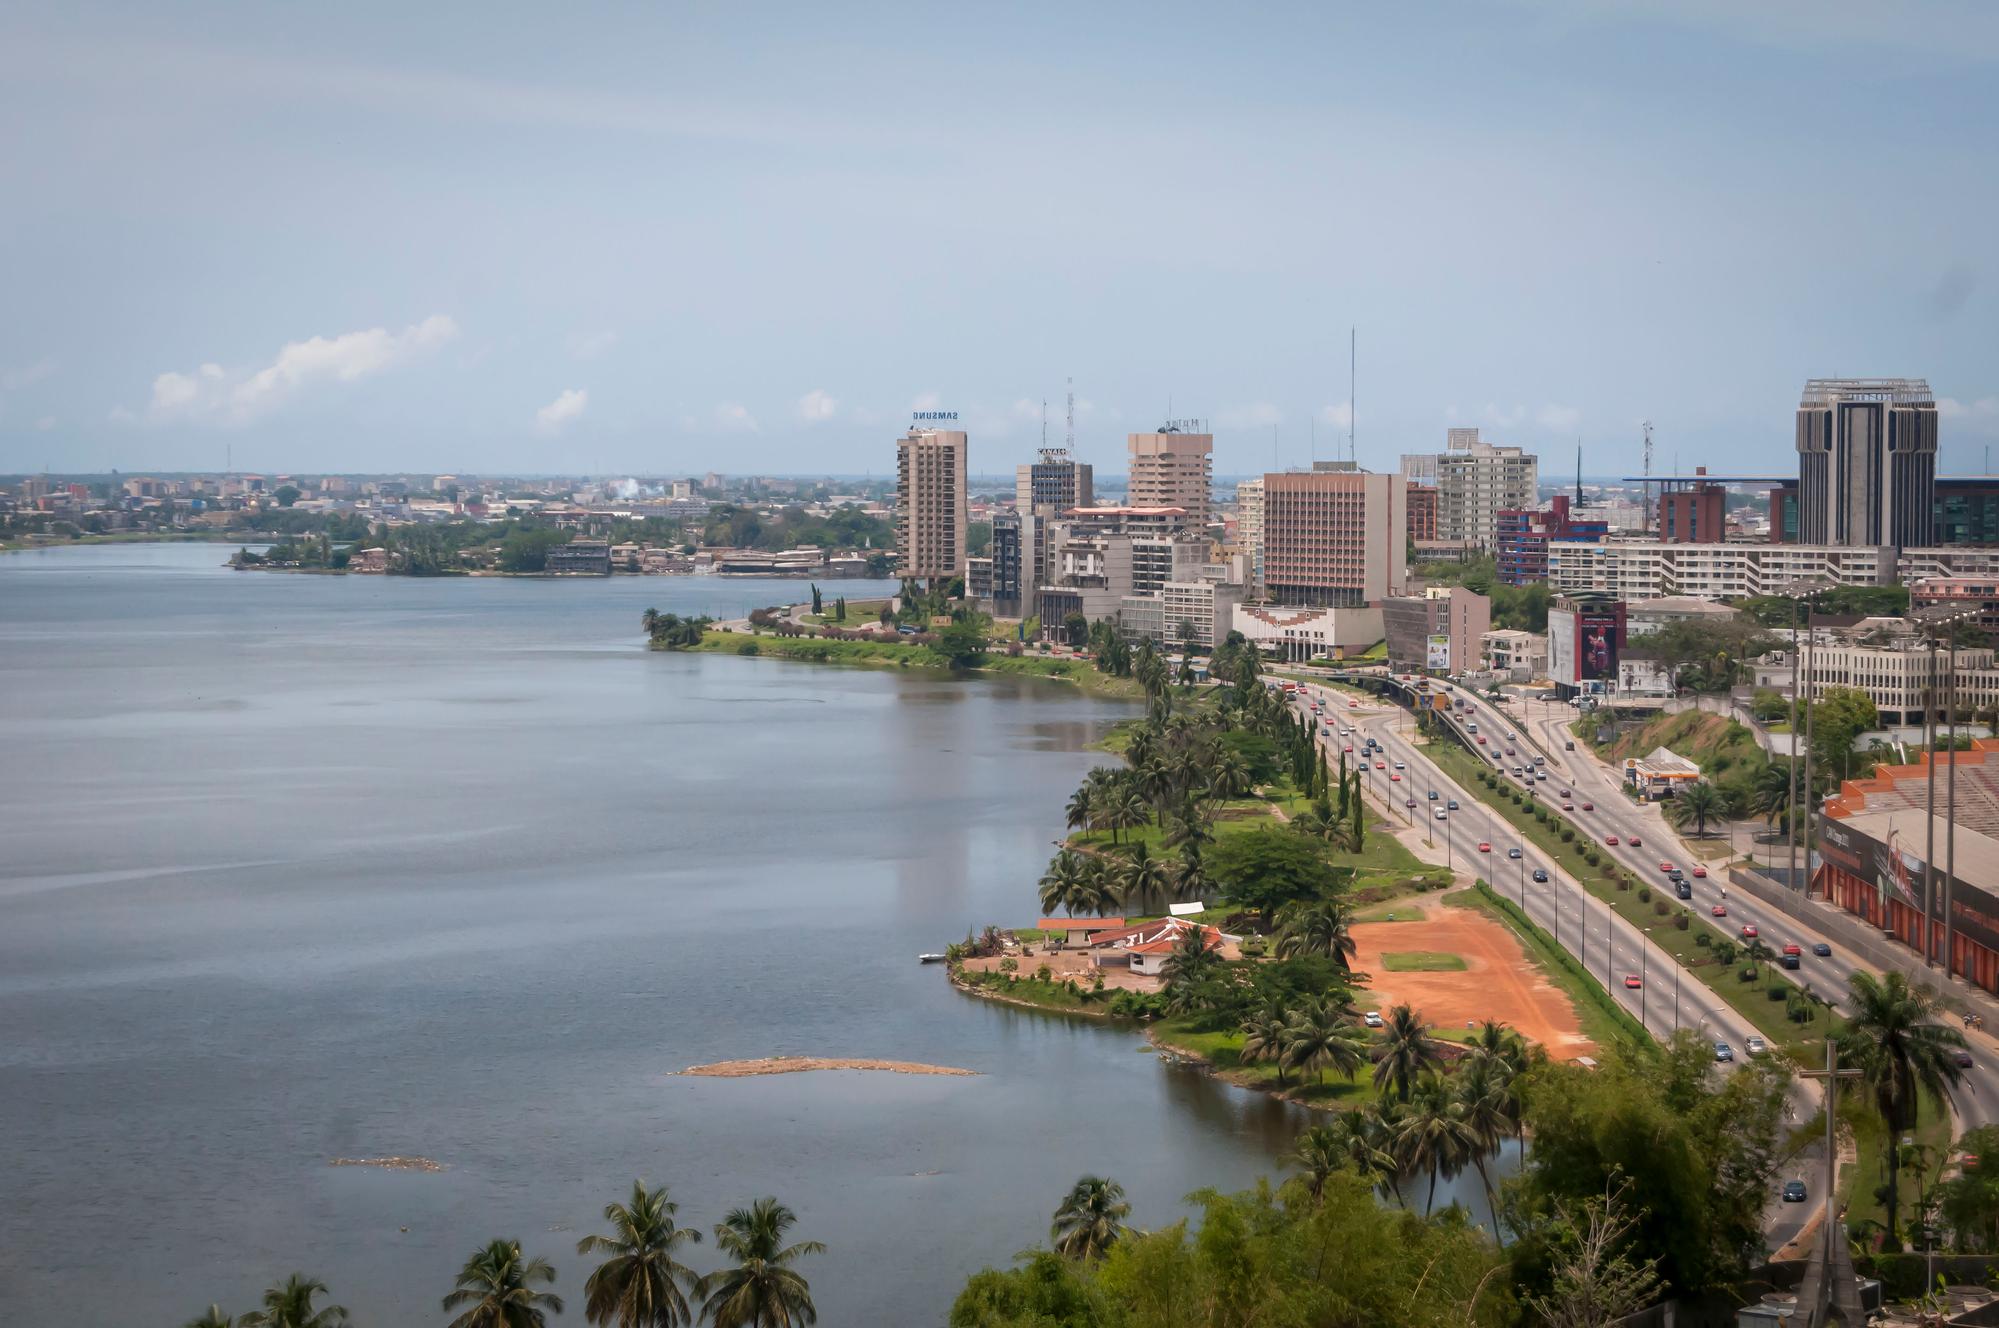  Abidjan